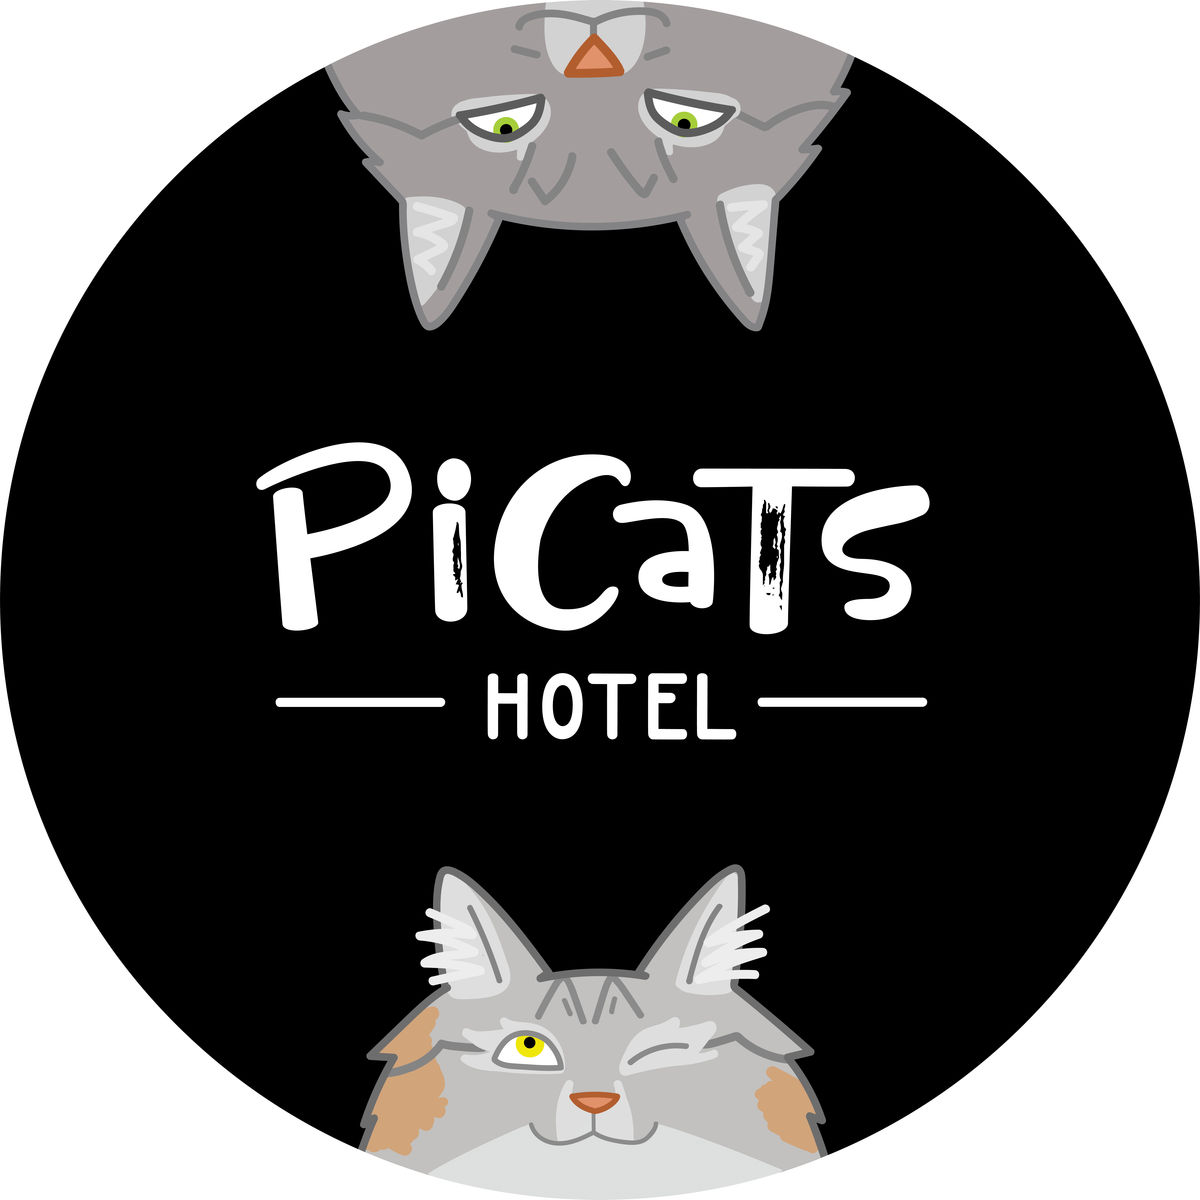 Picats_hotel